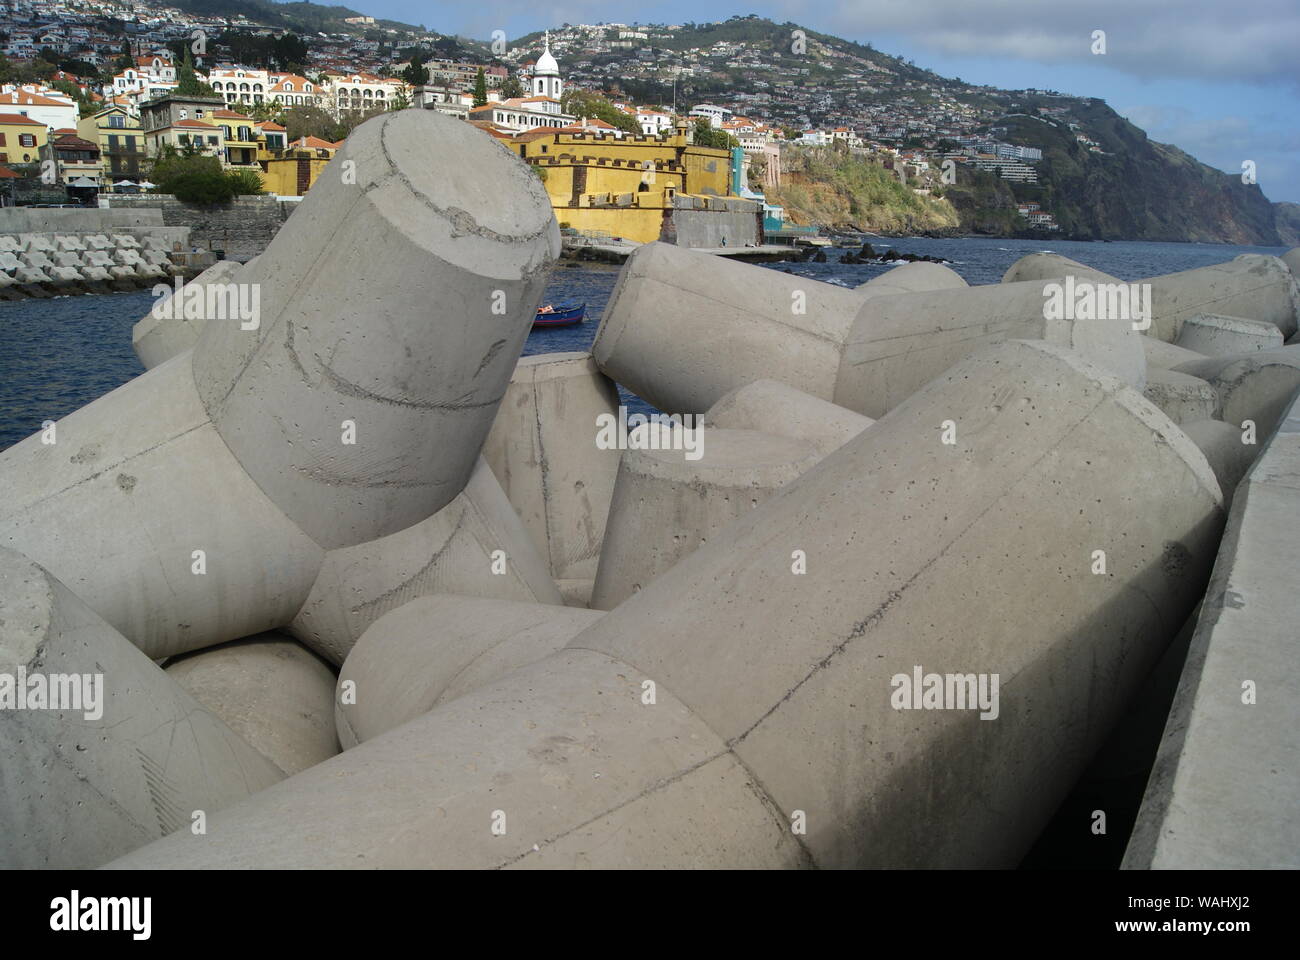 Les tétrapodes protégeant la ville de Funchal, Madère, Portugal Stock Photo